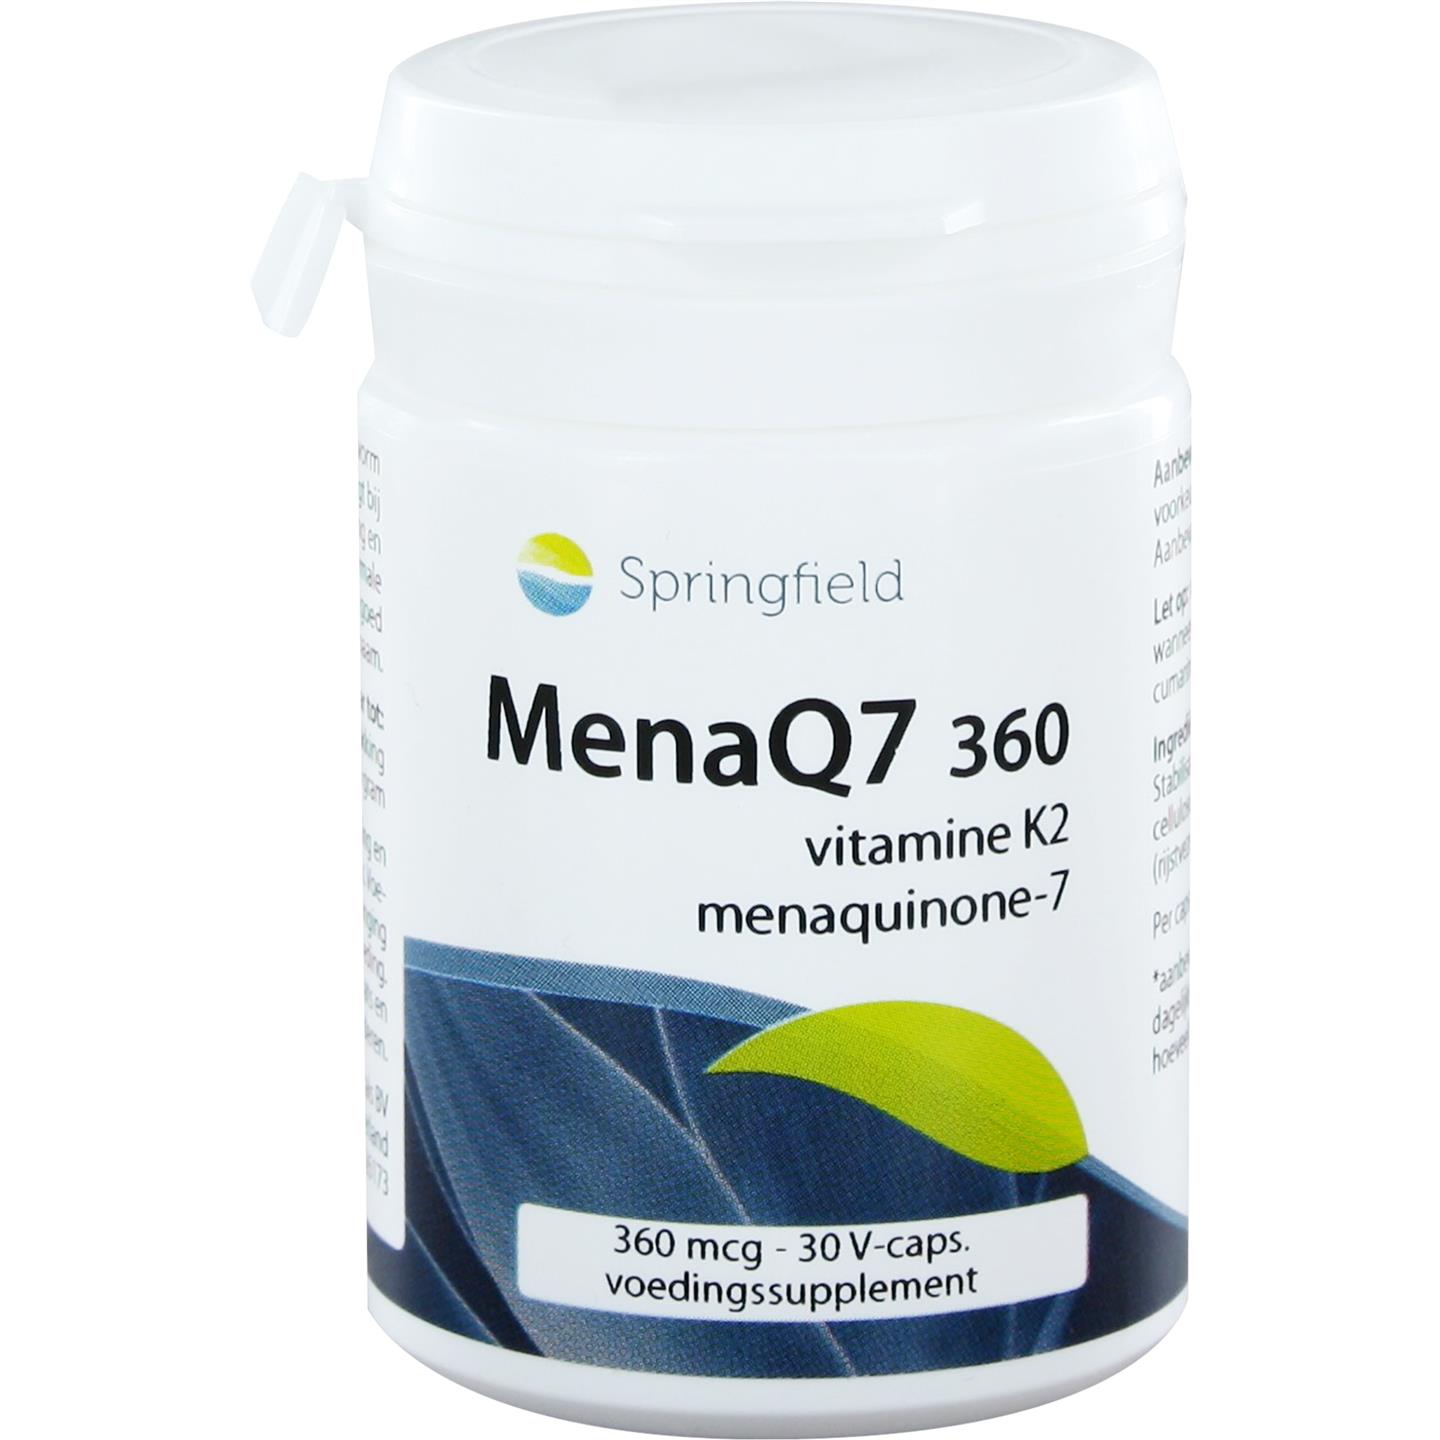 MenaQ7 360